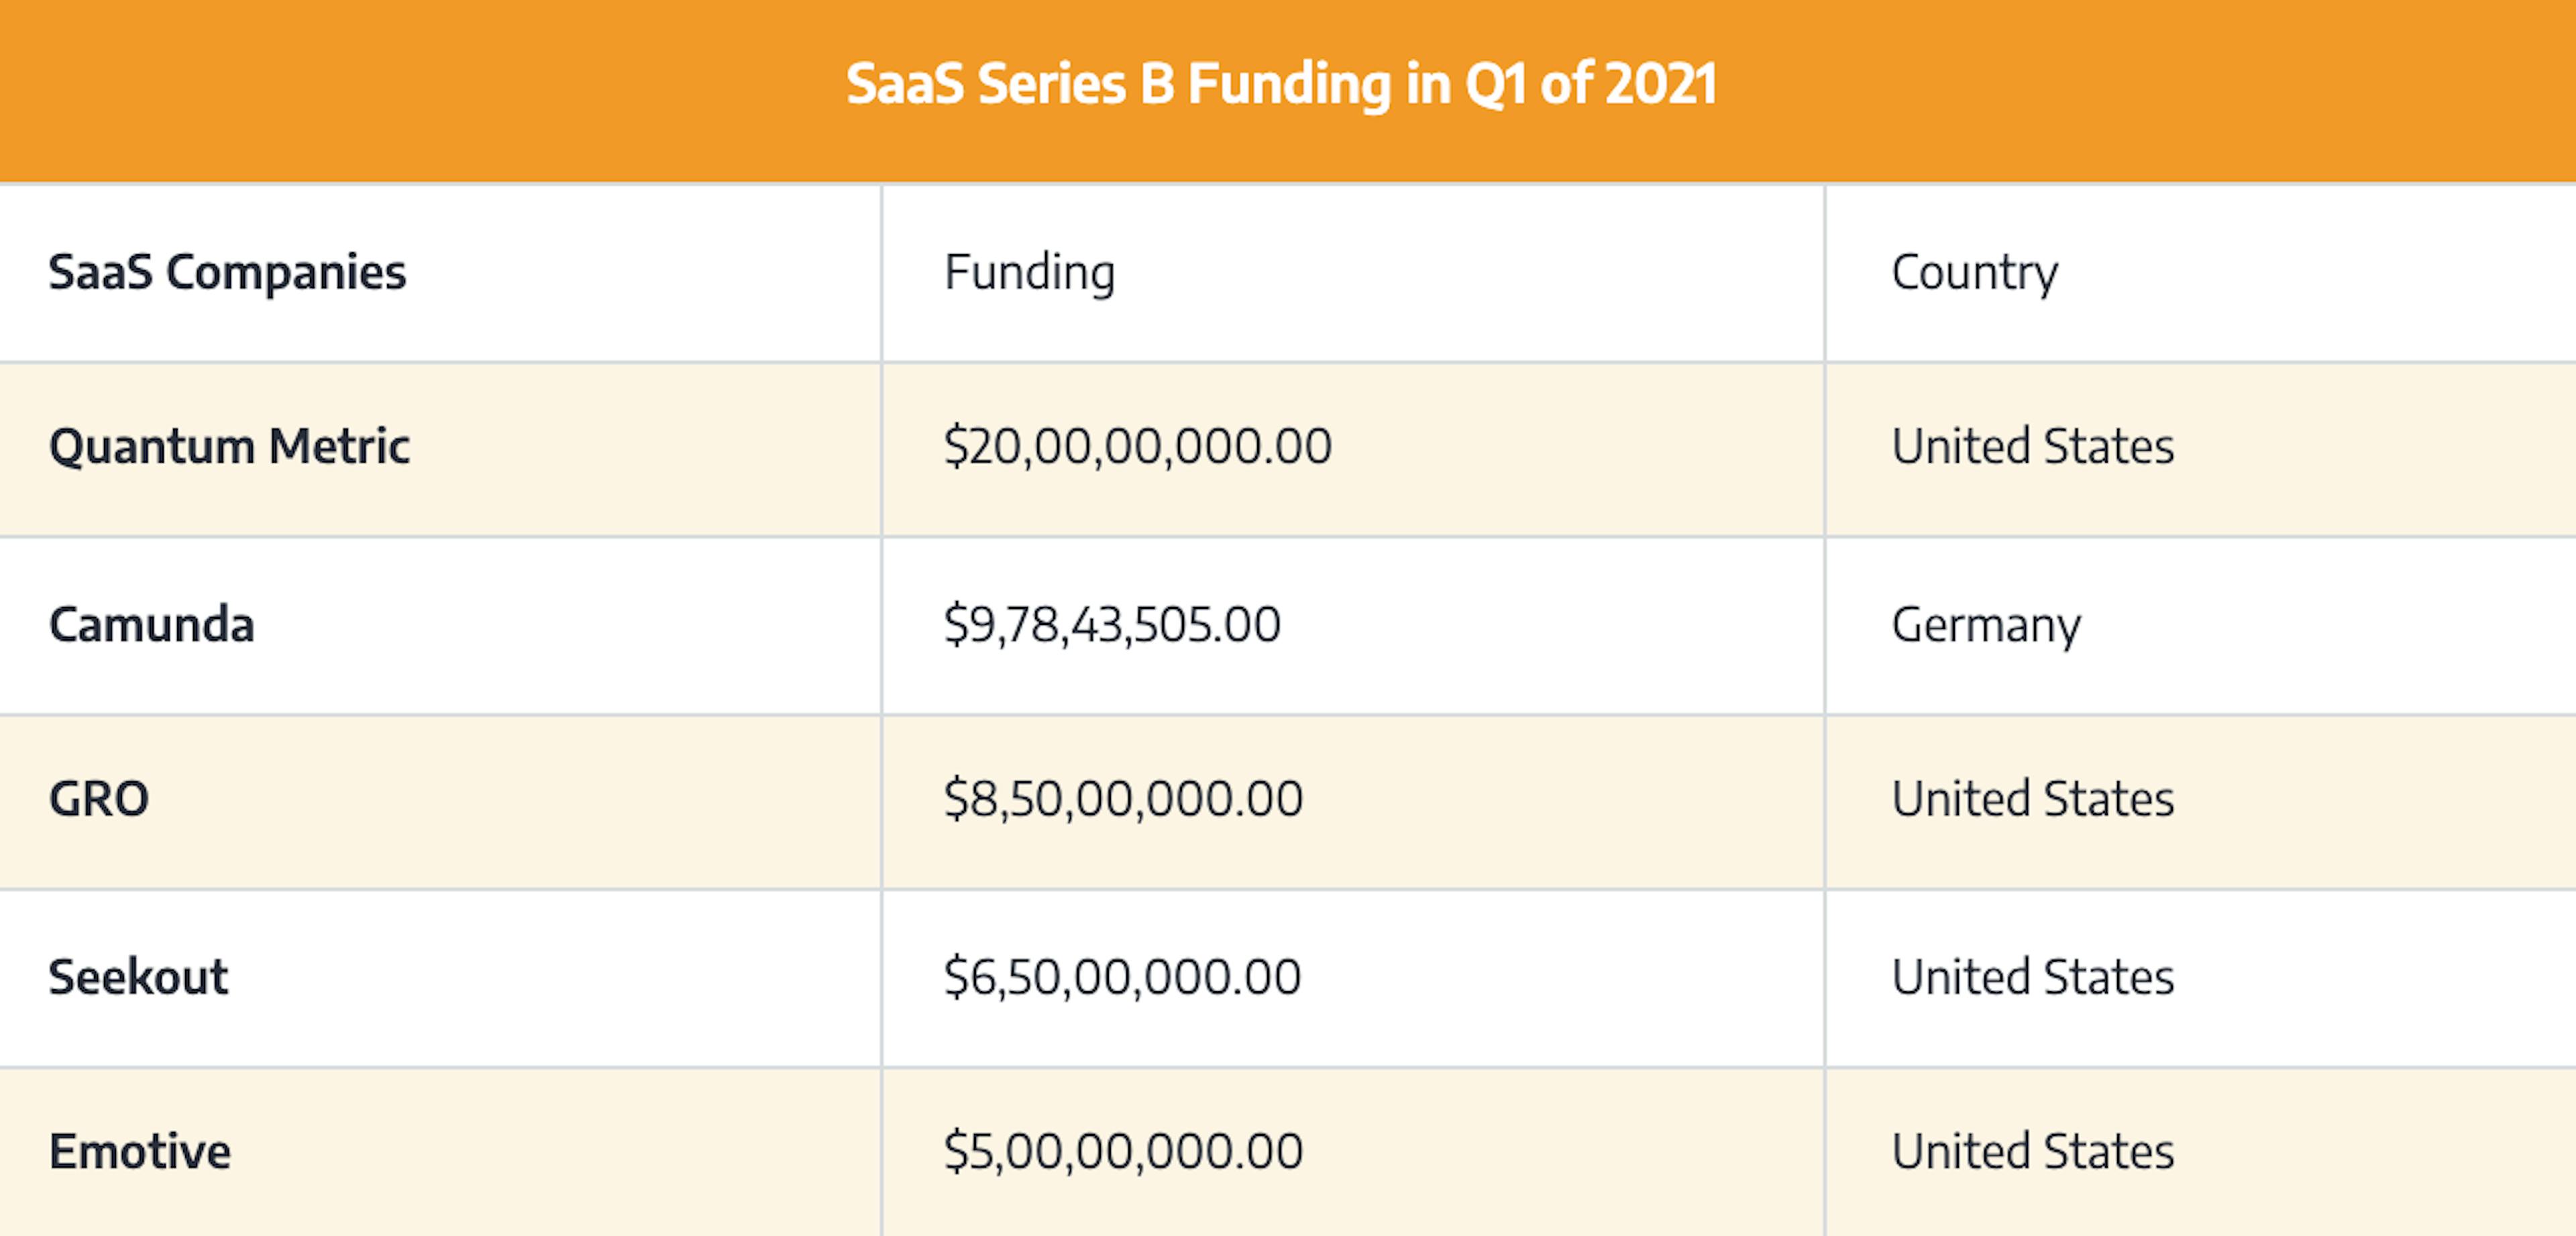 SaaS Series B Funding Amounts in Q1 of 2021